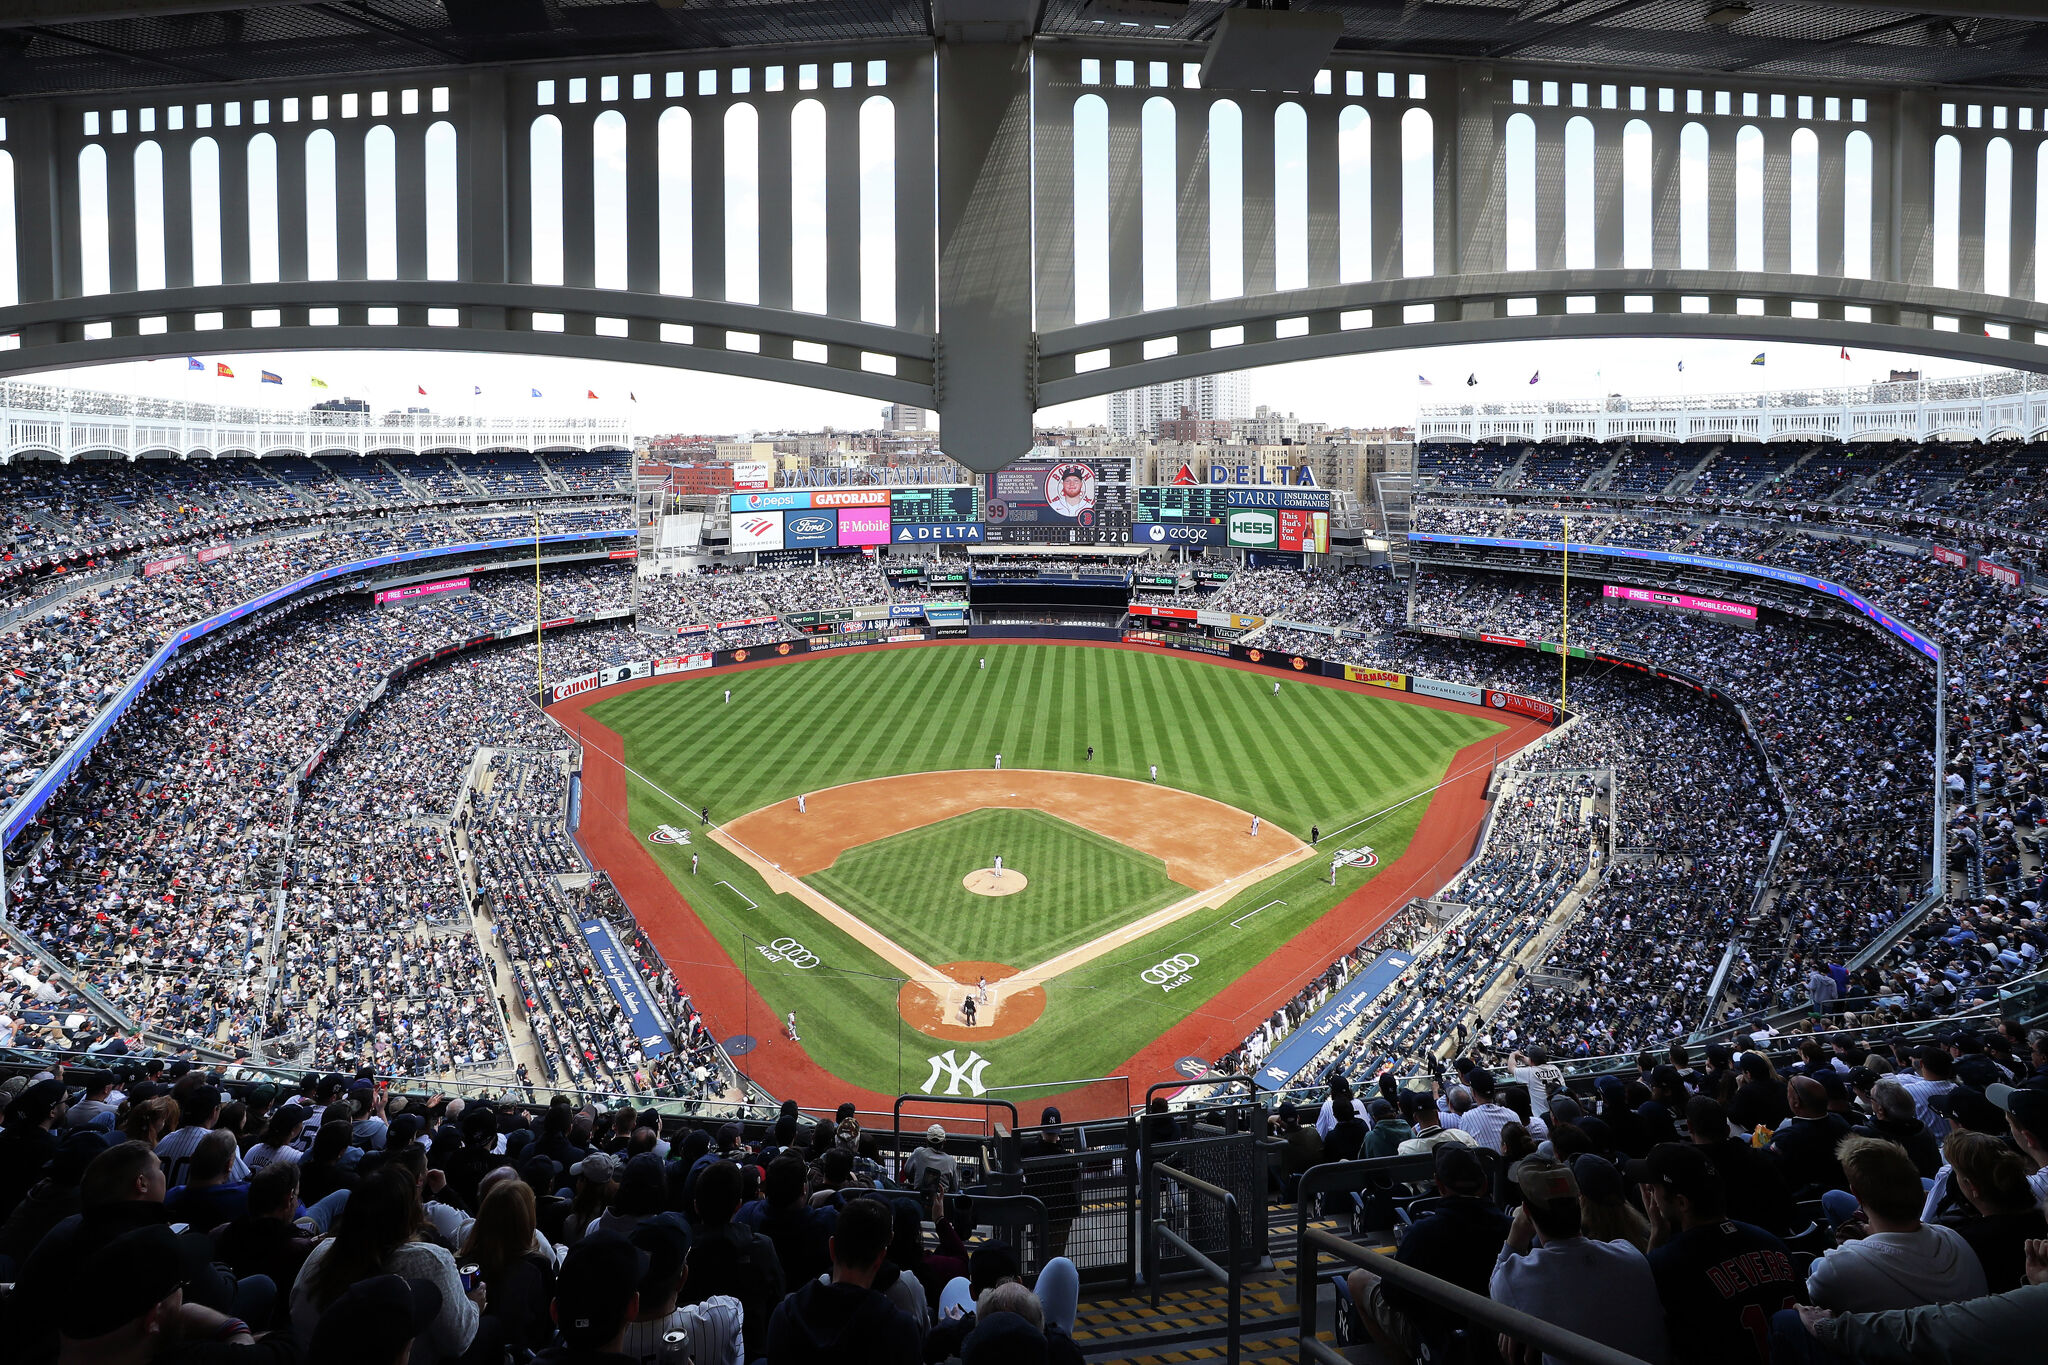 Yankee Stadium: Home of the Yankees